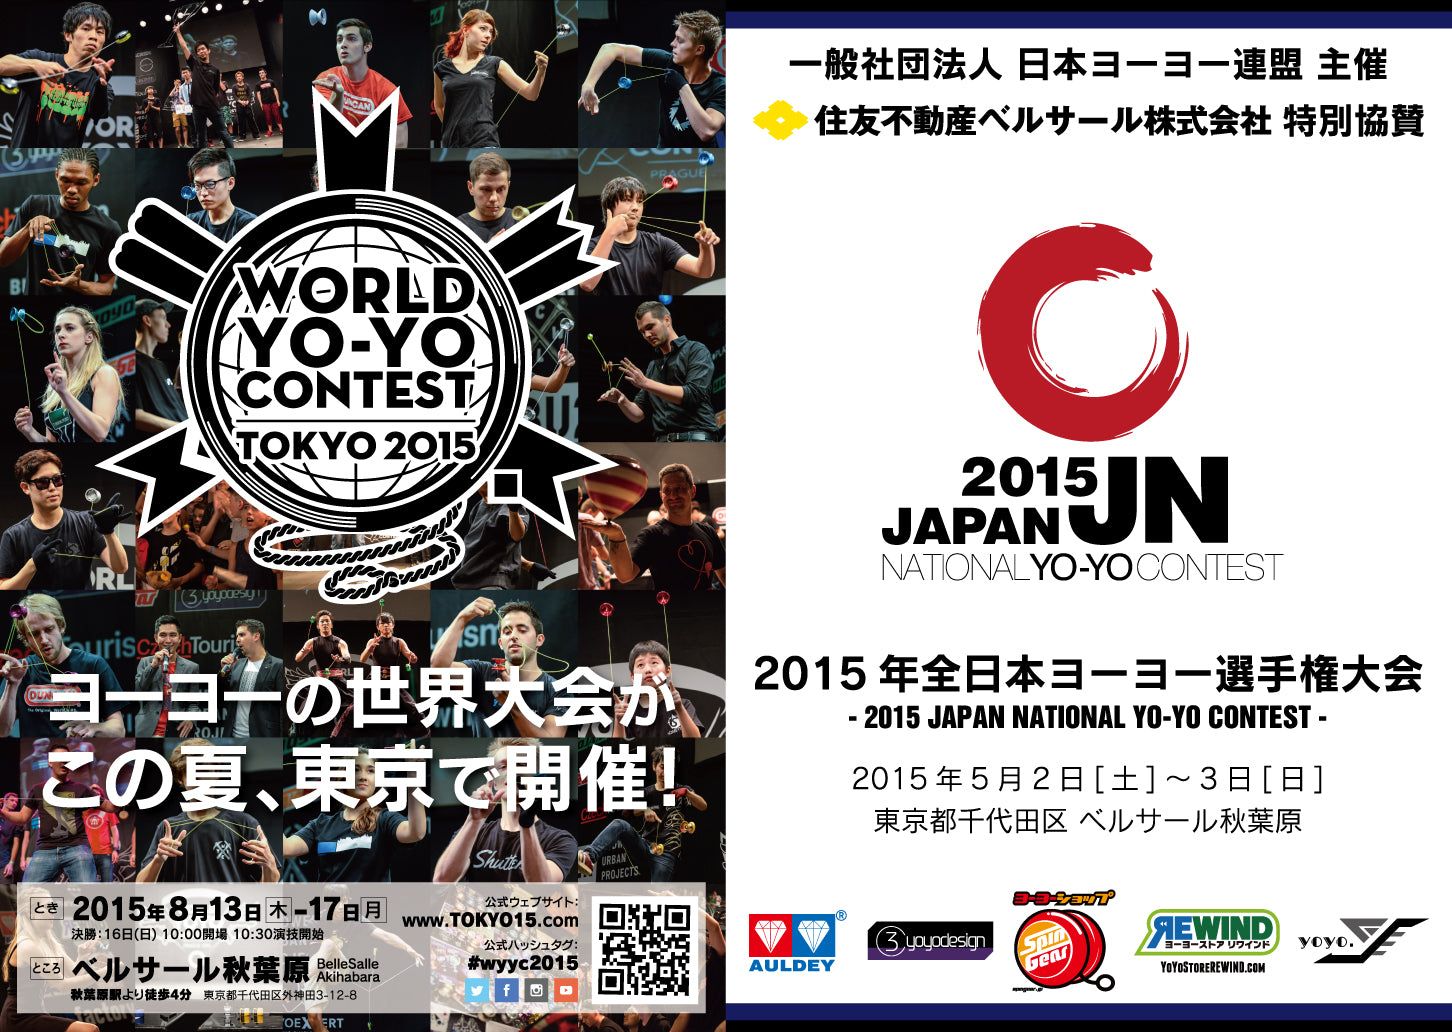 2015 World Yo-Yo Contest Pamphlet